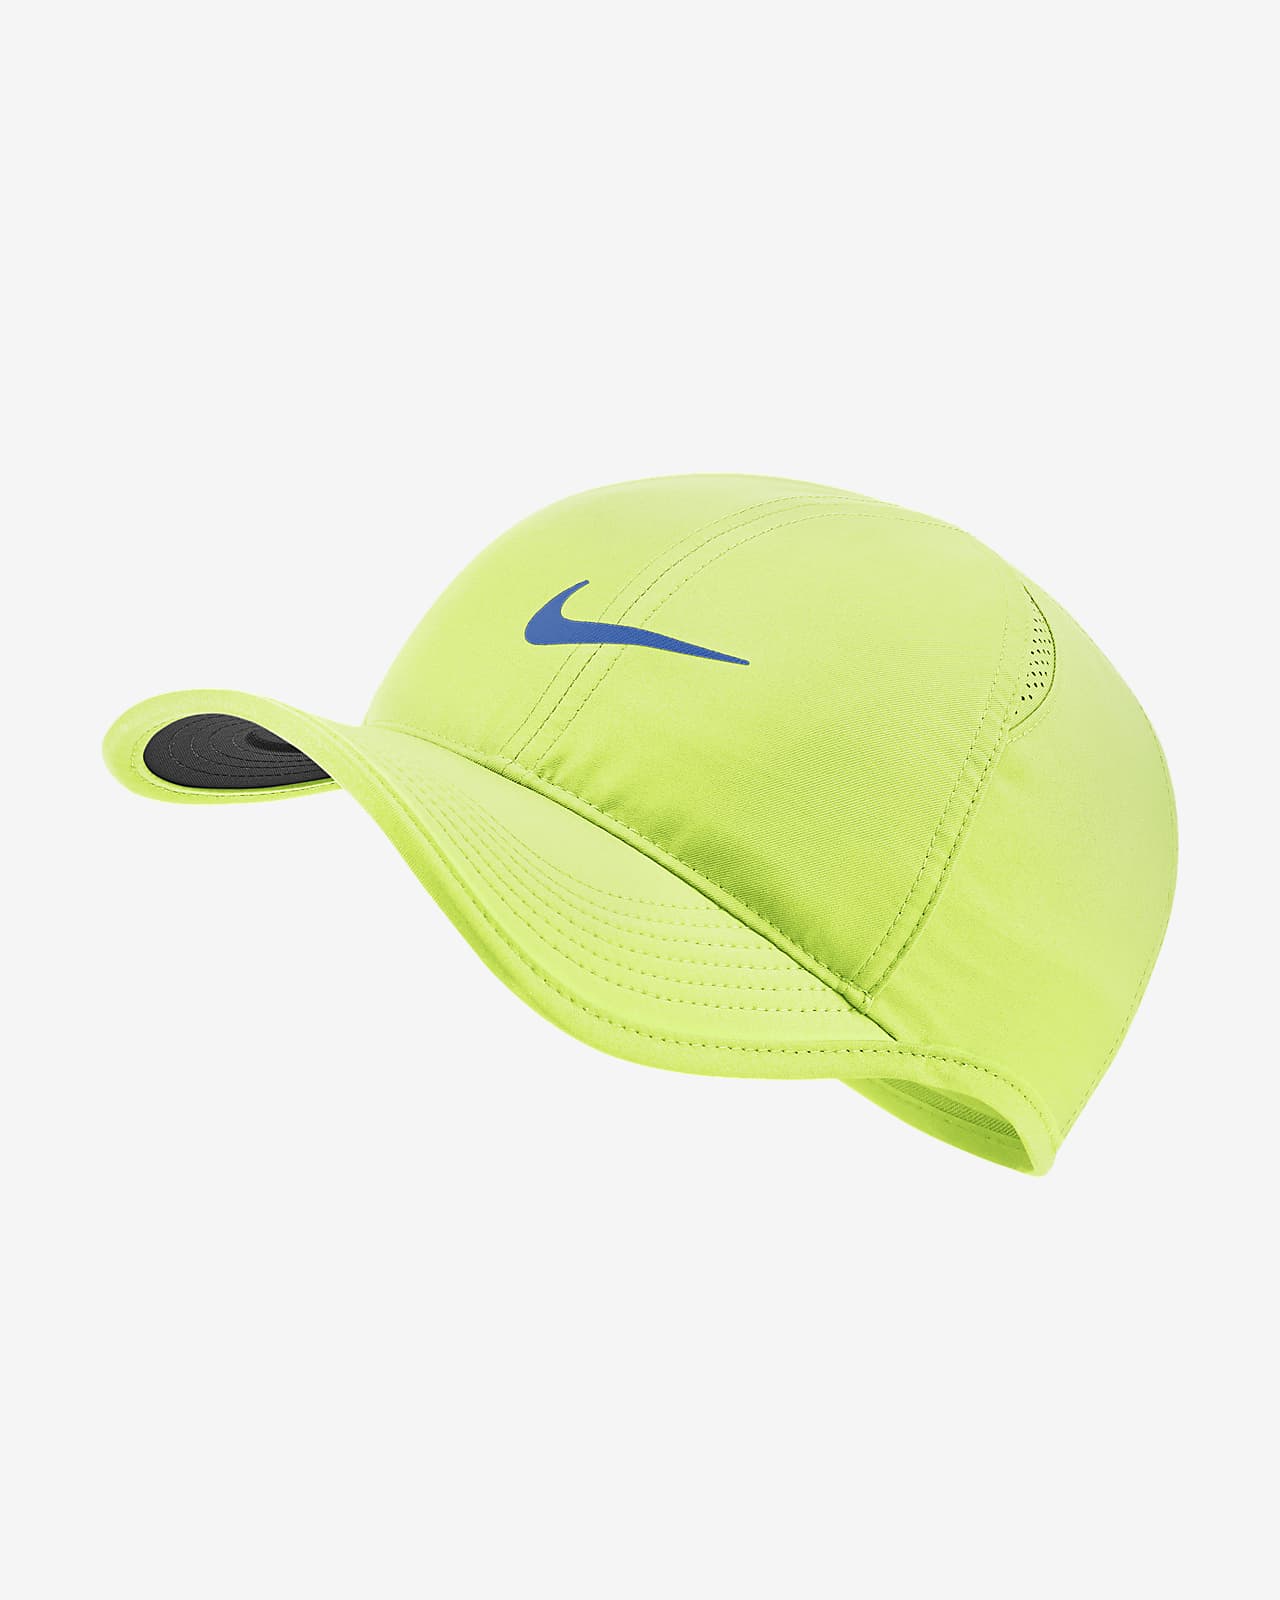 Gorra ajustable Nike Sportswear AeroBill Featherlight